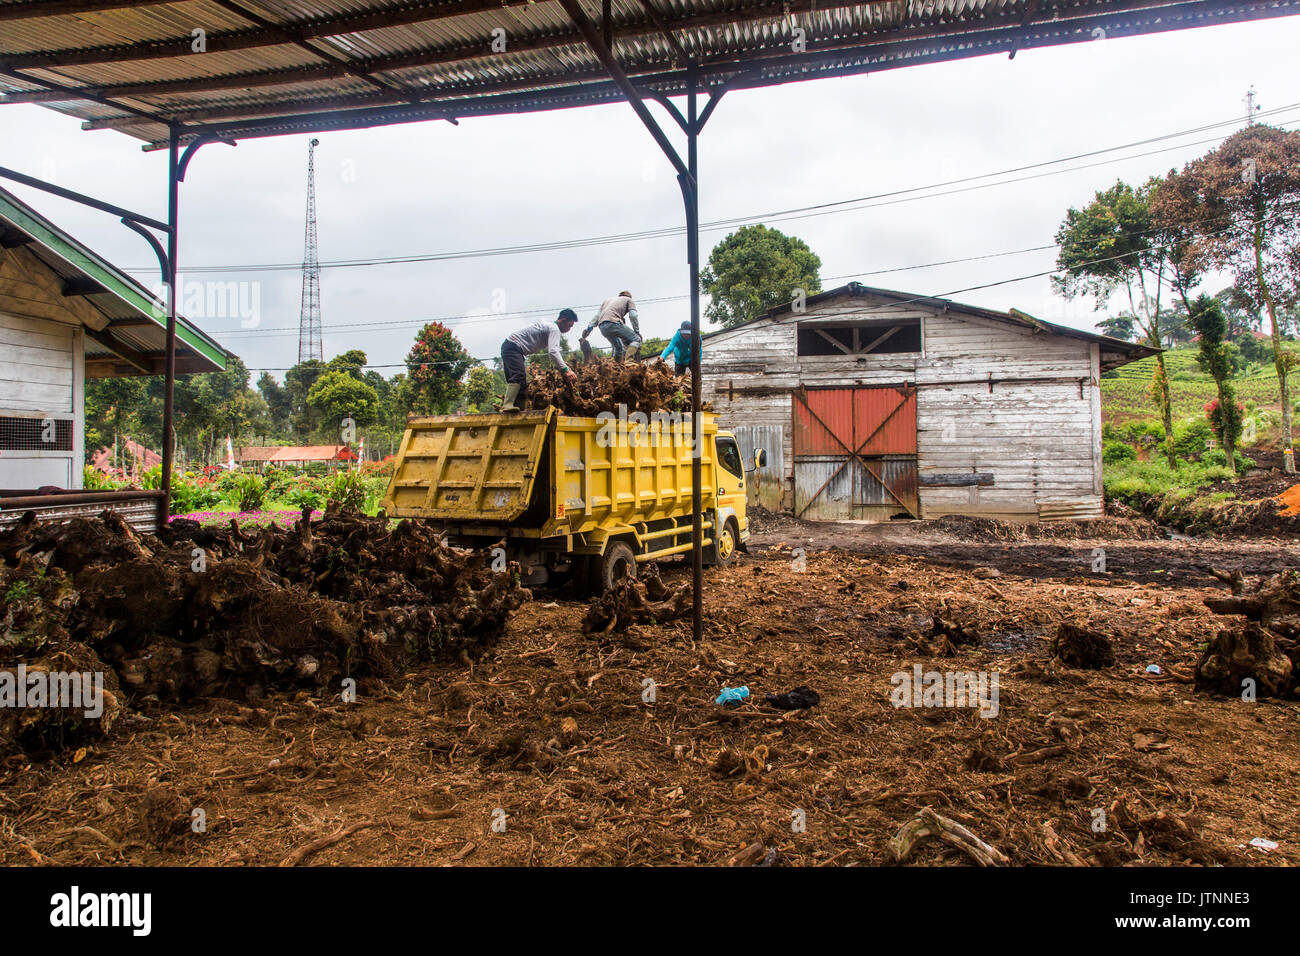 Los trabajadores tiran los viejos tocones de una planta de té de un camión de descarga en una pila debajo de un cobertizo cubierto en el valle de Kerinci, Sumatra, Indonesia. Foto de stock